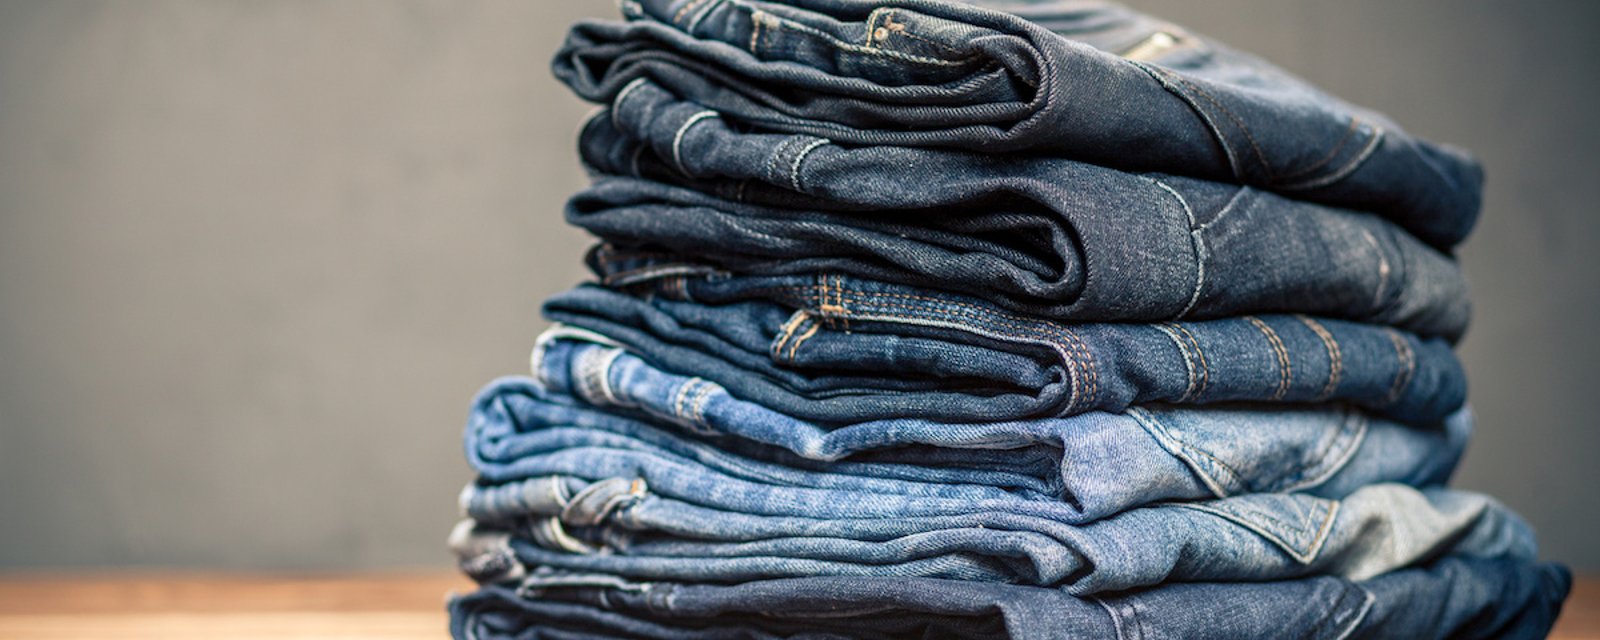 13 solutions aux problèmes qui peuvent survenir avec des jeans 